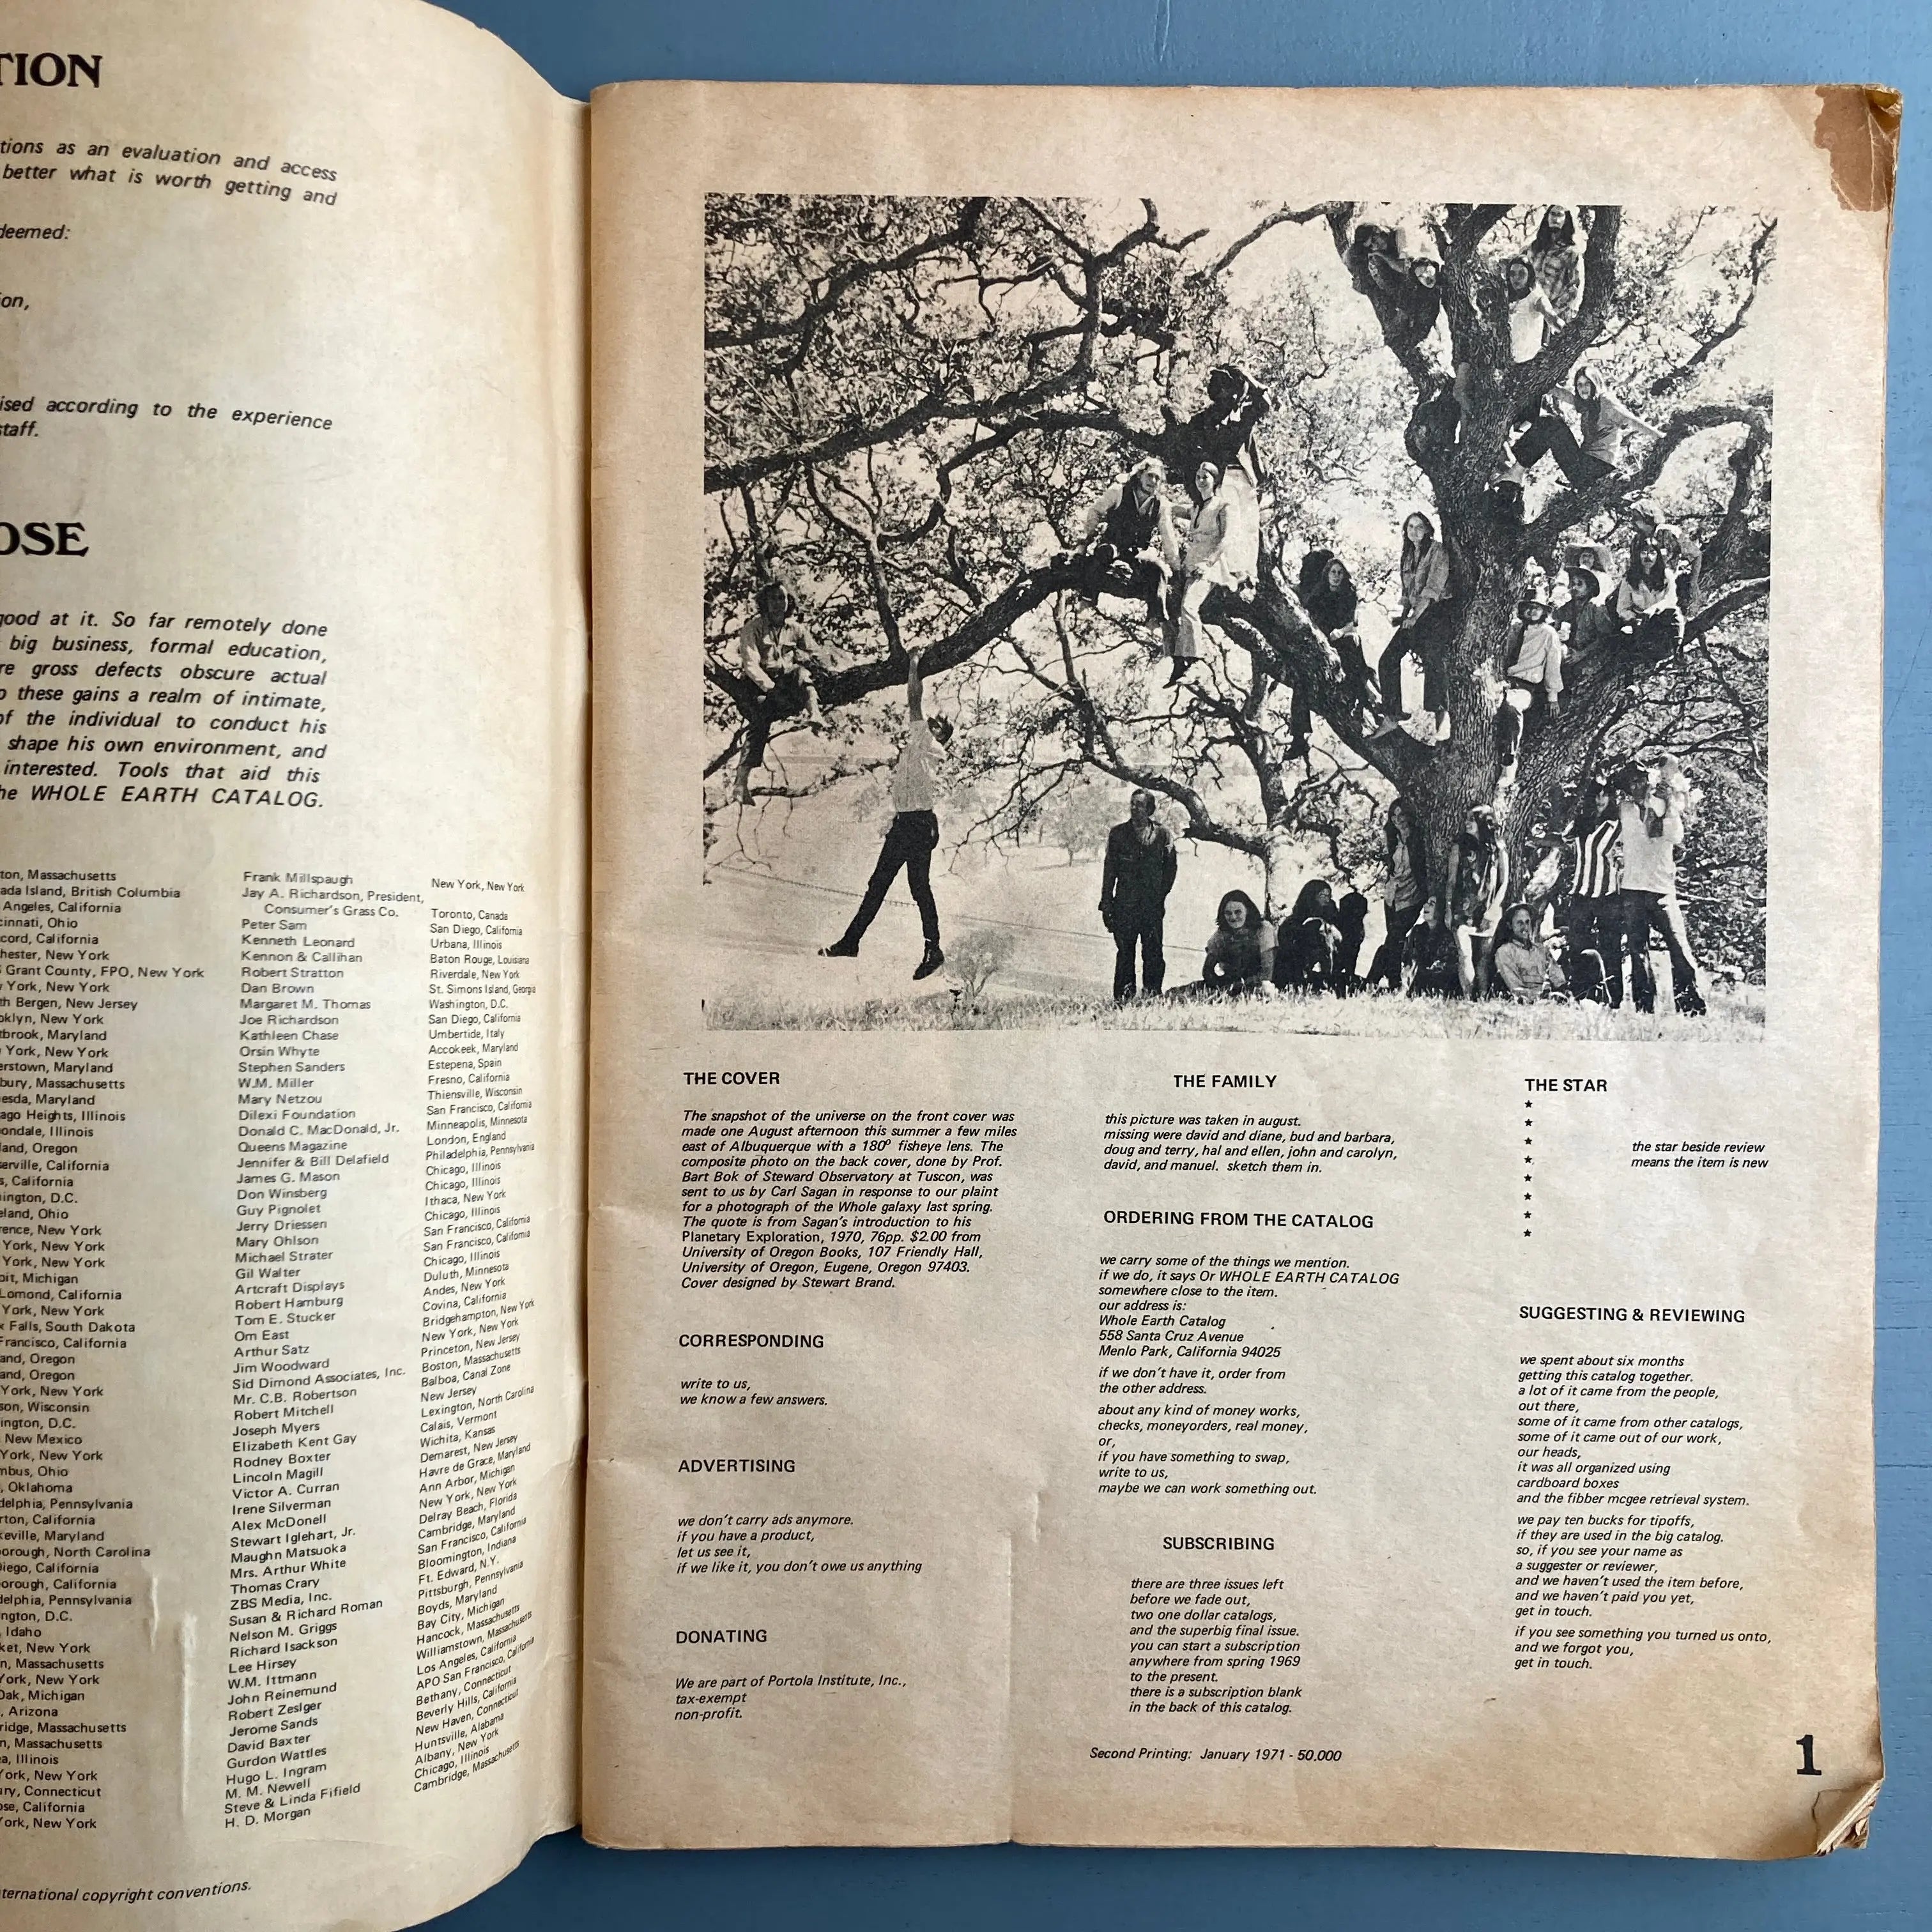 Whole Earth Catalog - Fall 1970 - Portola Institute 1971 – Saint 